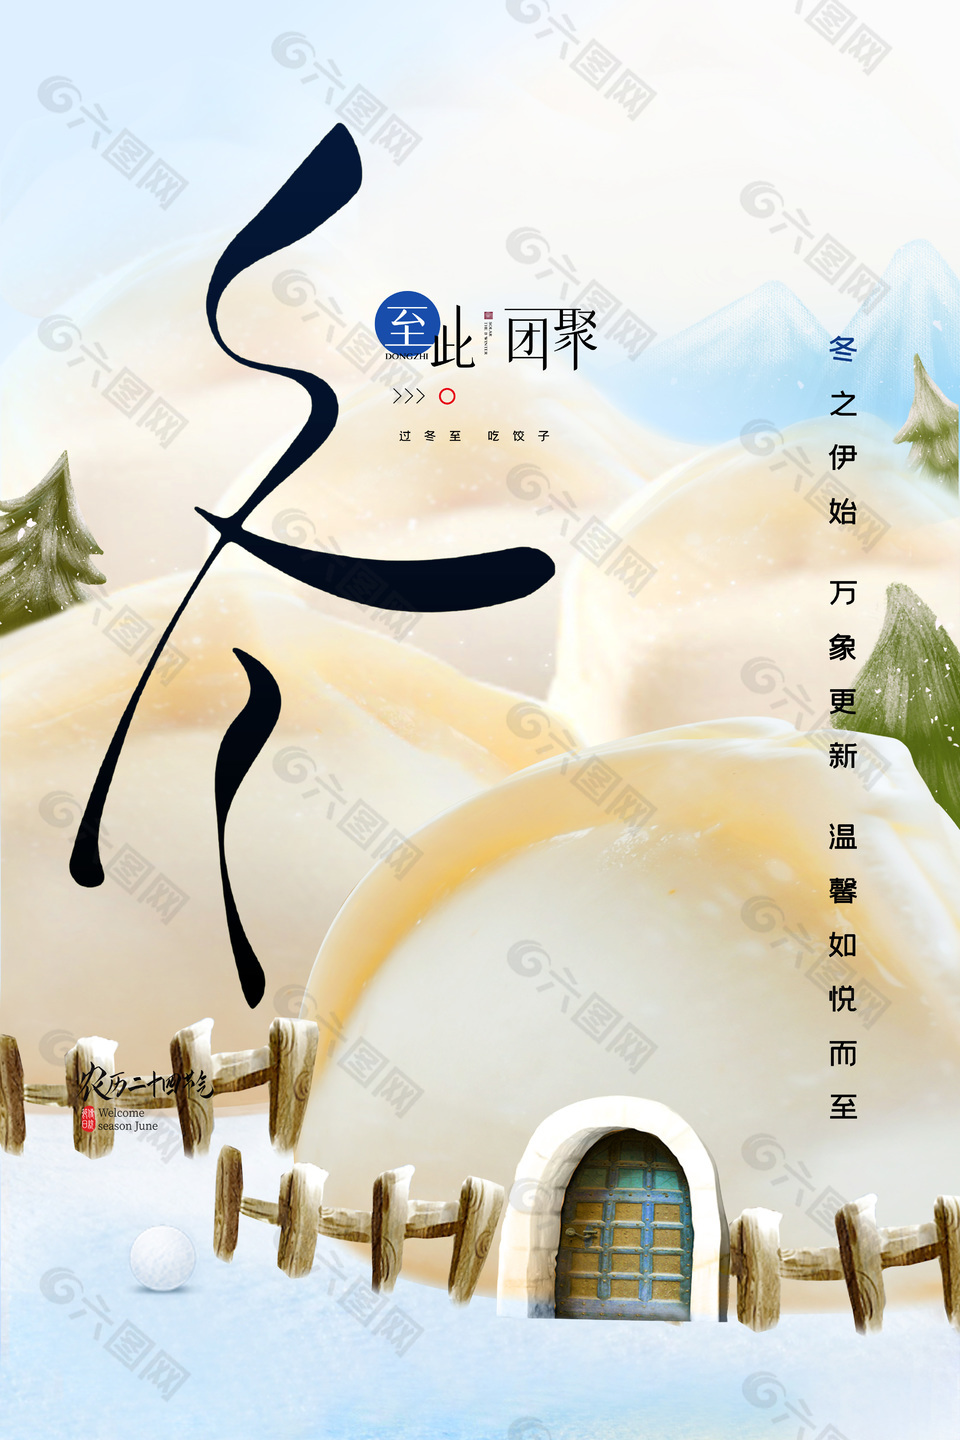 冬至节气创意饺子屋插画海报素材